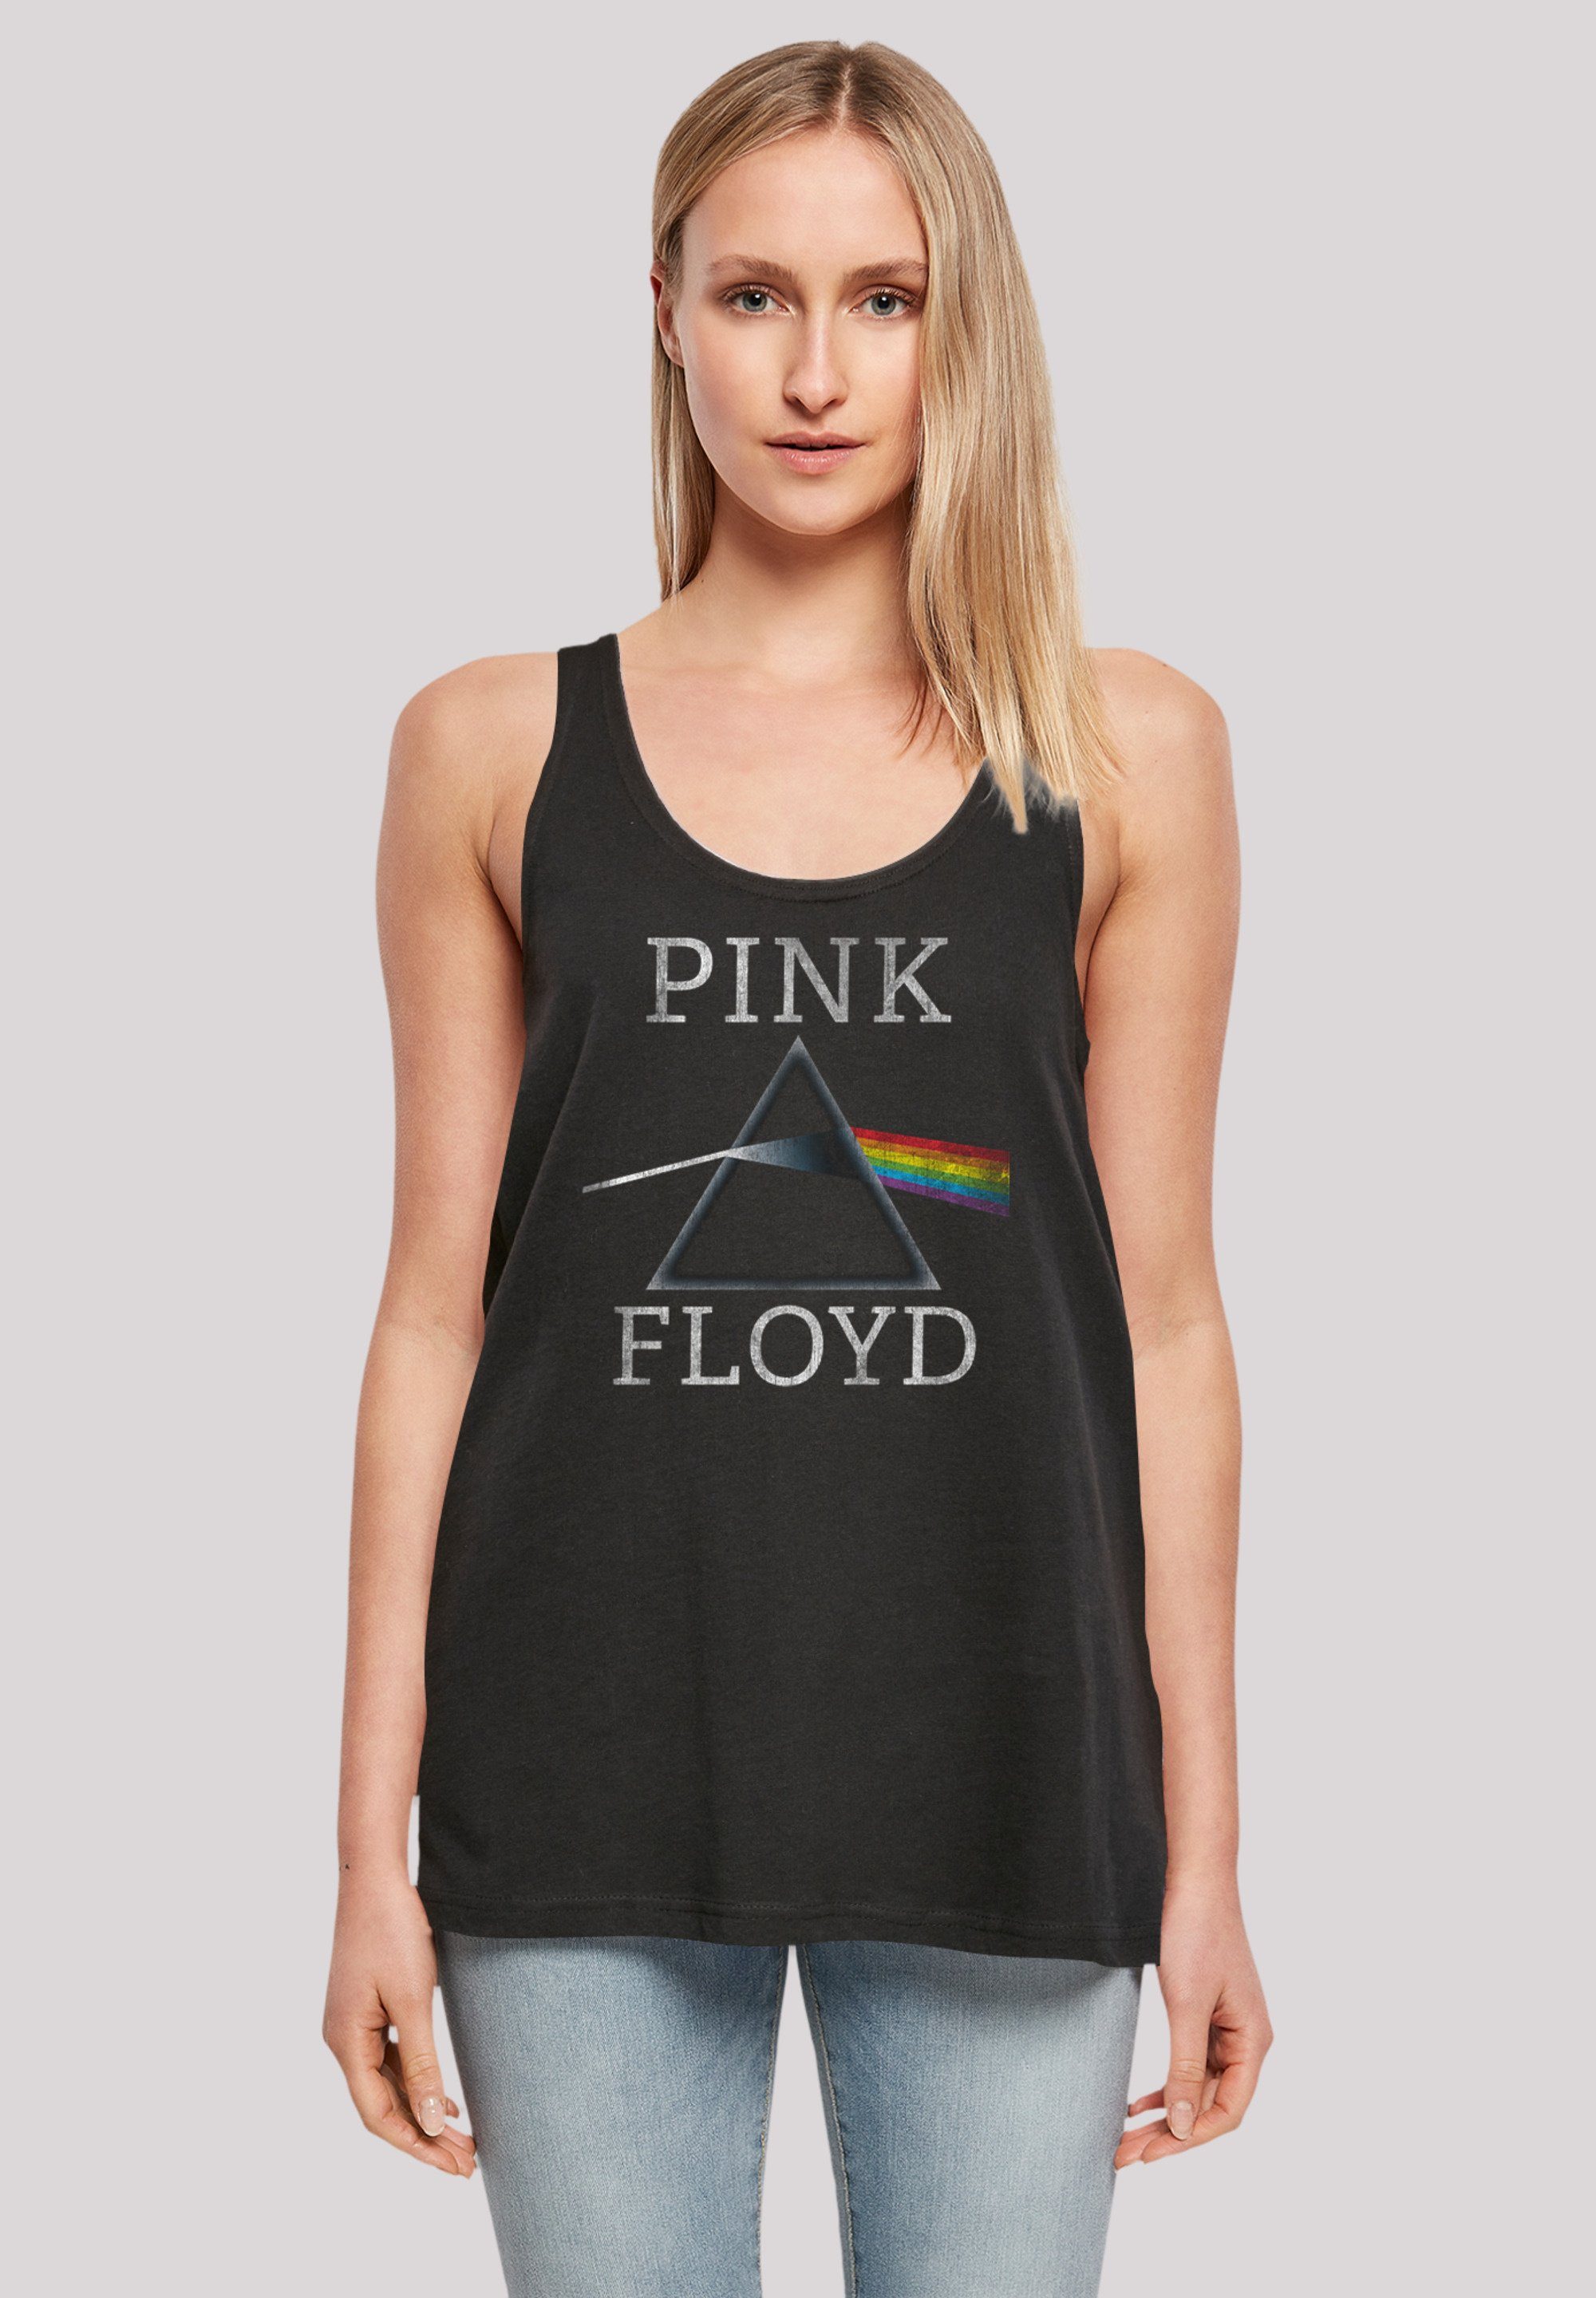 genähter lang F4NT4STIC The weit Saum, T-Shirt Dark Moon Of Print, und Pink Doppelt Floyd Side geschnitten